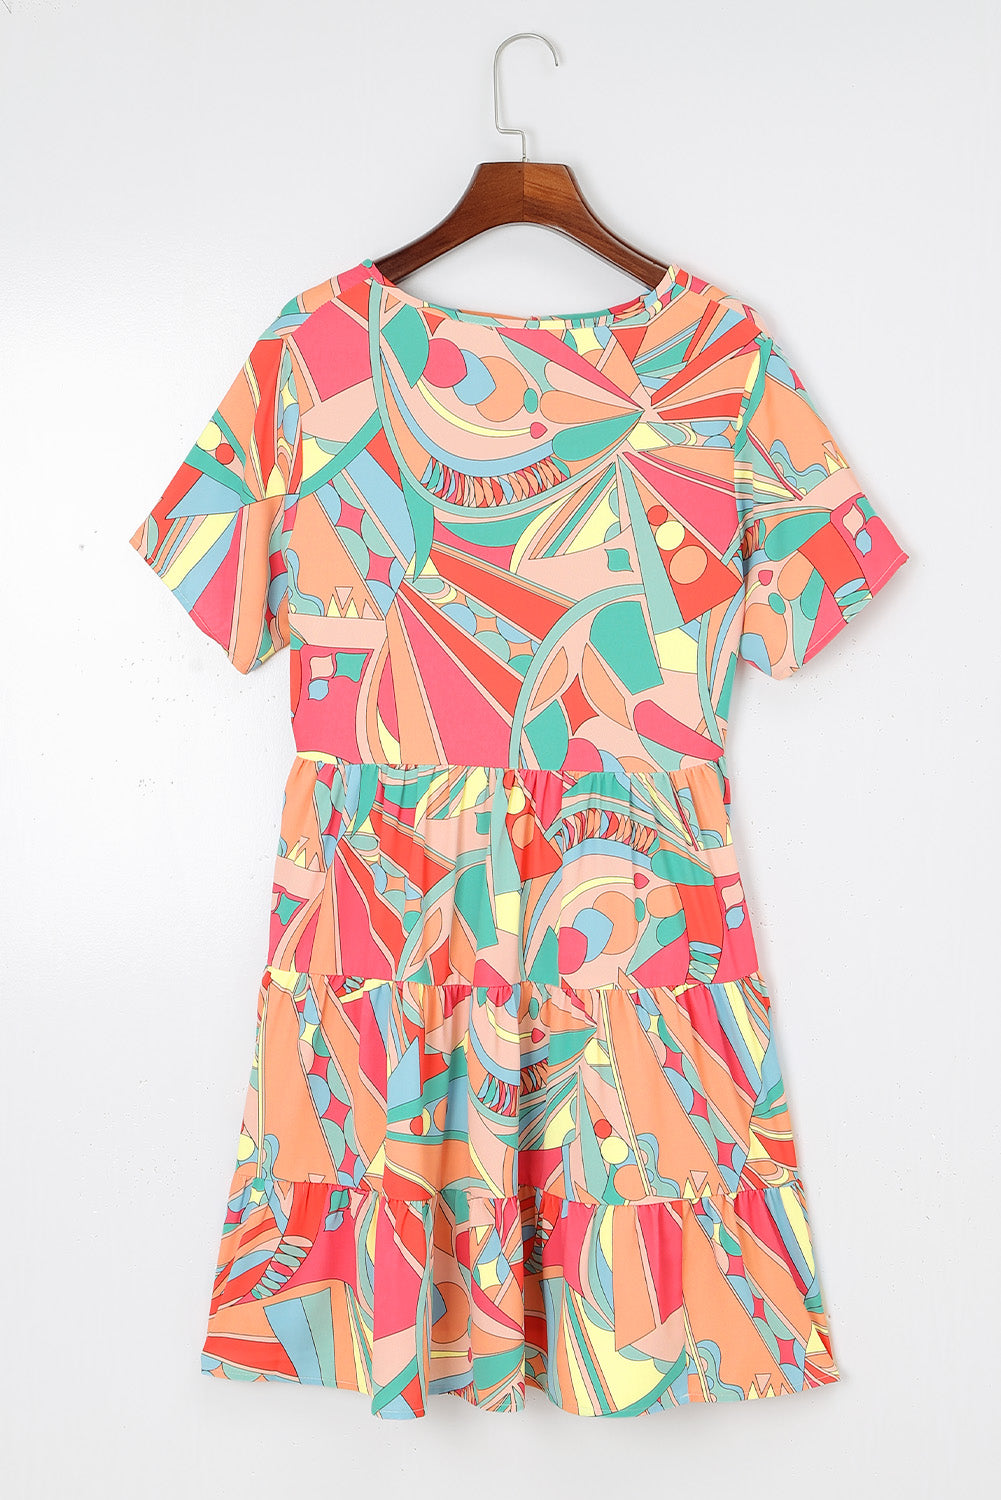 Višebojna lepršava haljina s apstraktnim geometrijskim printom s resicama